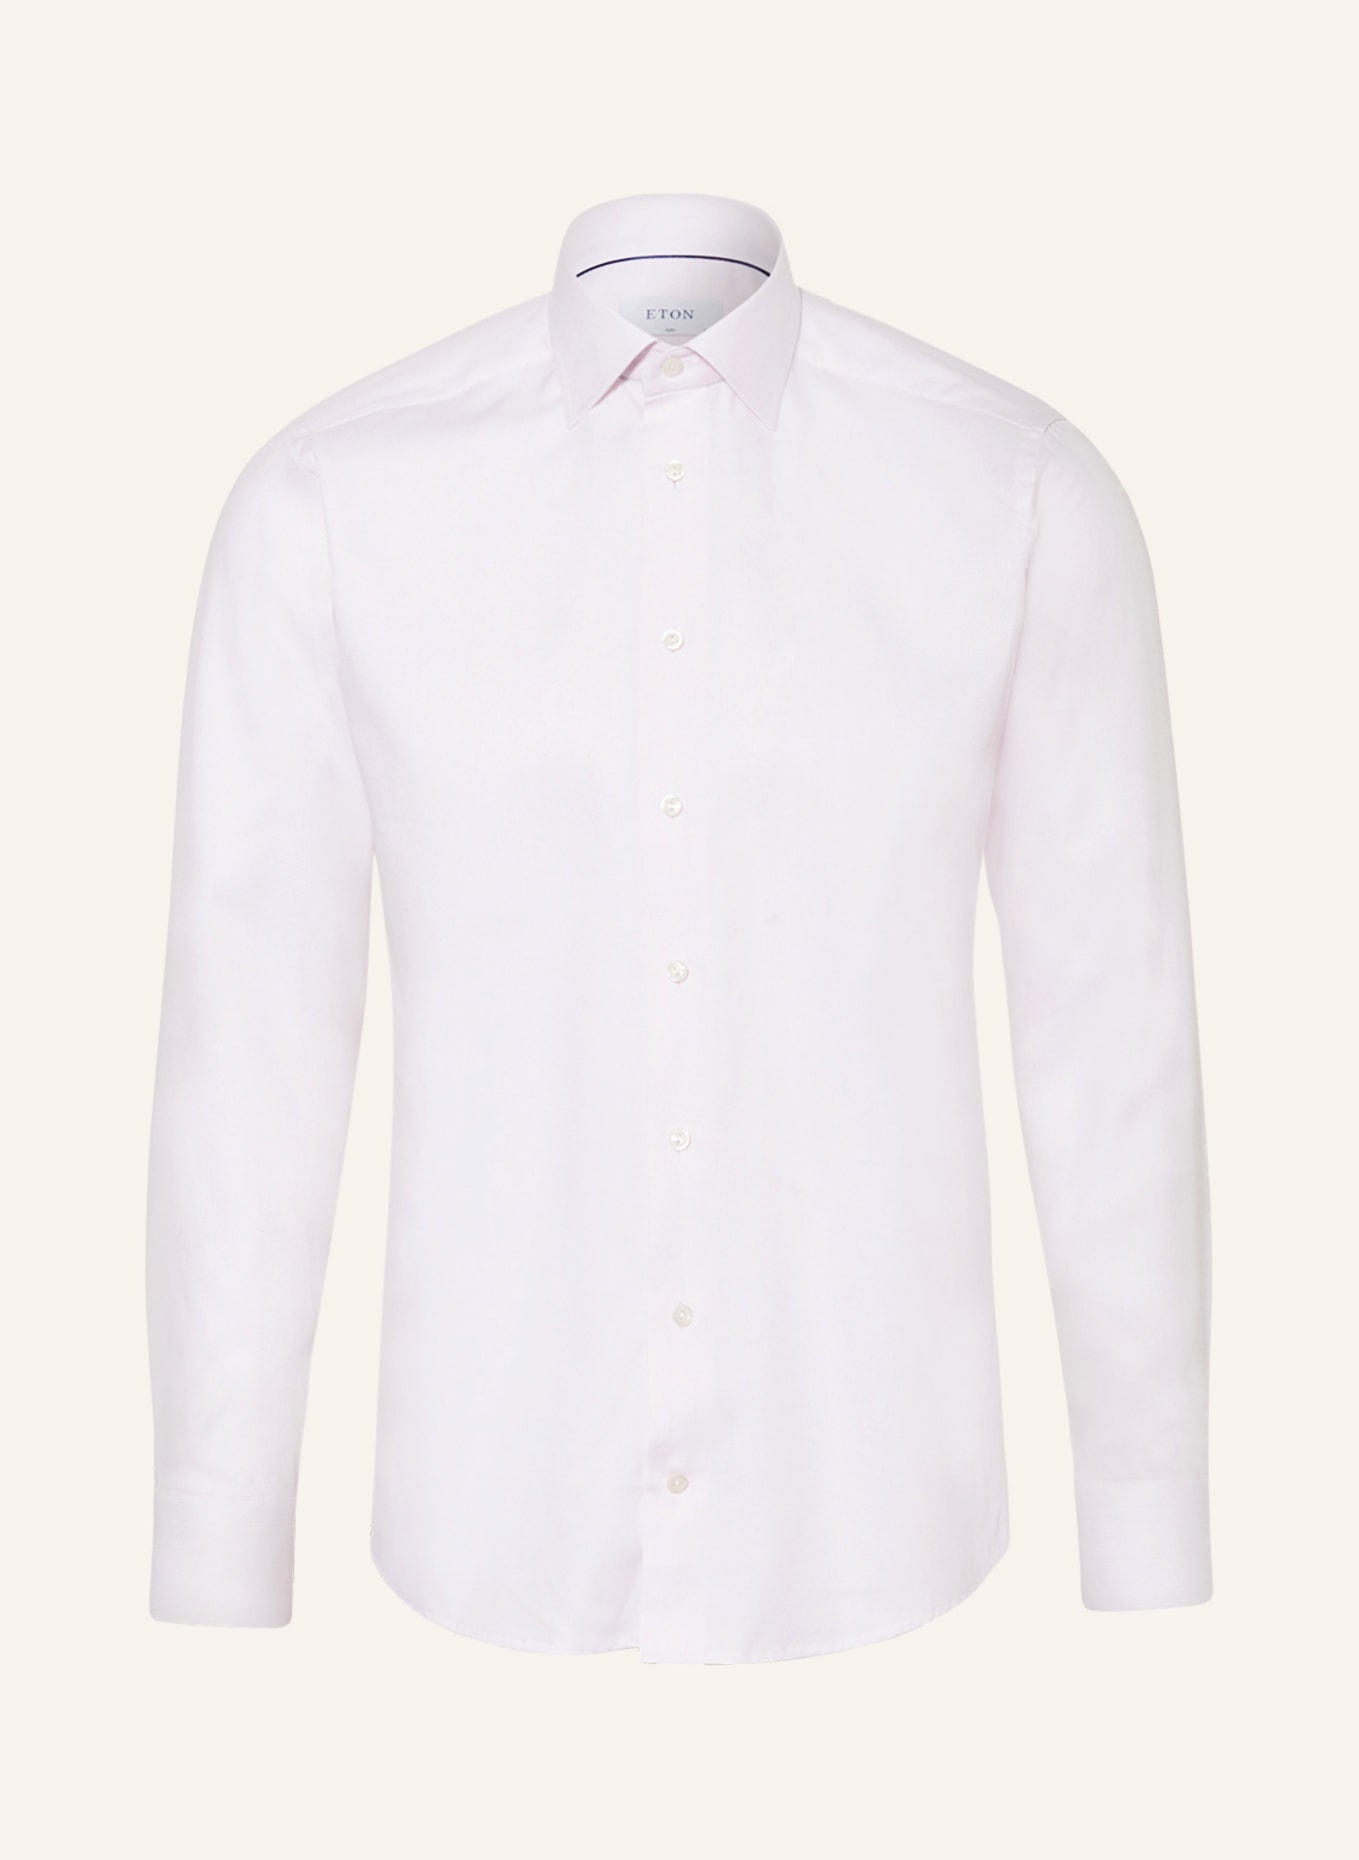 ETON Shirt slim fit, Color: LIGHT PINK (Image 1)